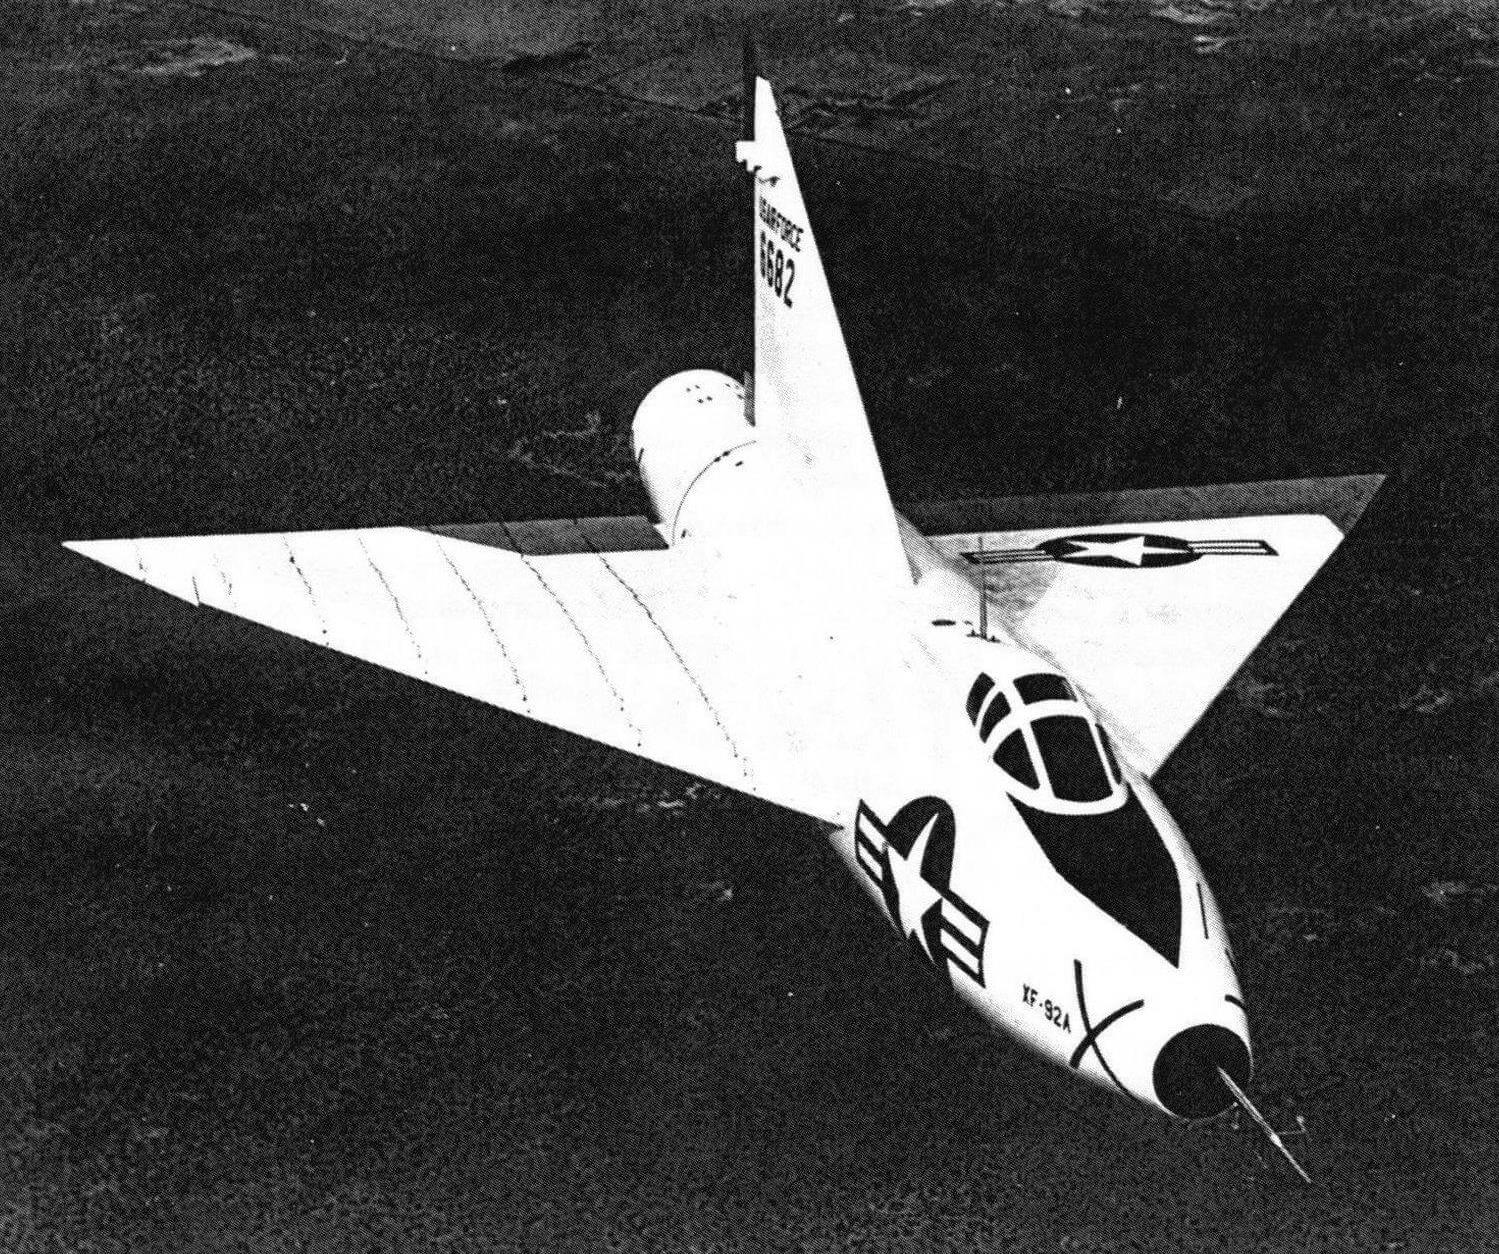 Прототип ХF-92А в полете. На крыле видны шелковинки для изучения потоков обтекания